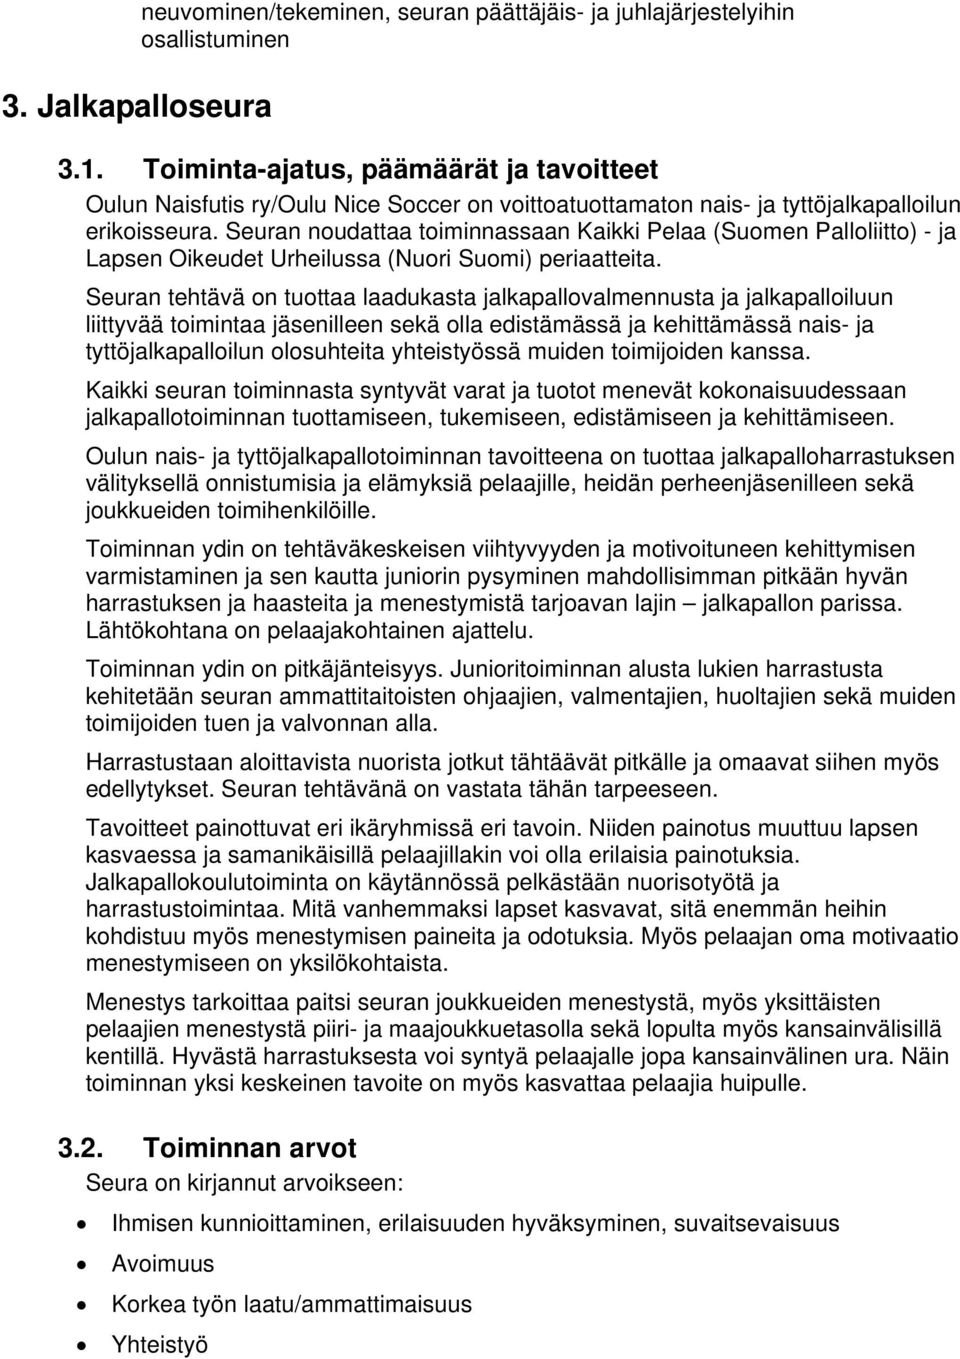 Seuran noudattaa toiminnassaan Kaikki Pelaa (Suomen Palloliitto) - ja Lapsen Oikeudet Urheilussa (Nuori Suomi) periaatteita.